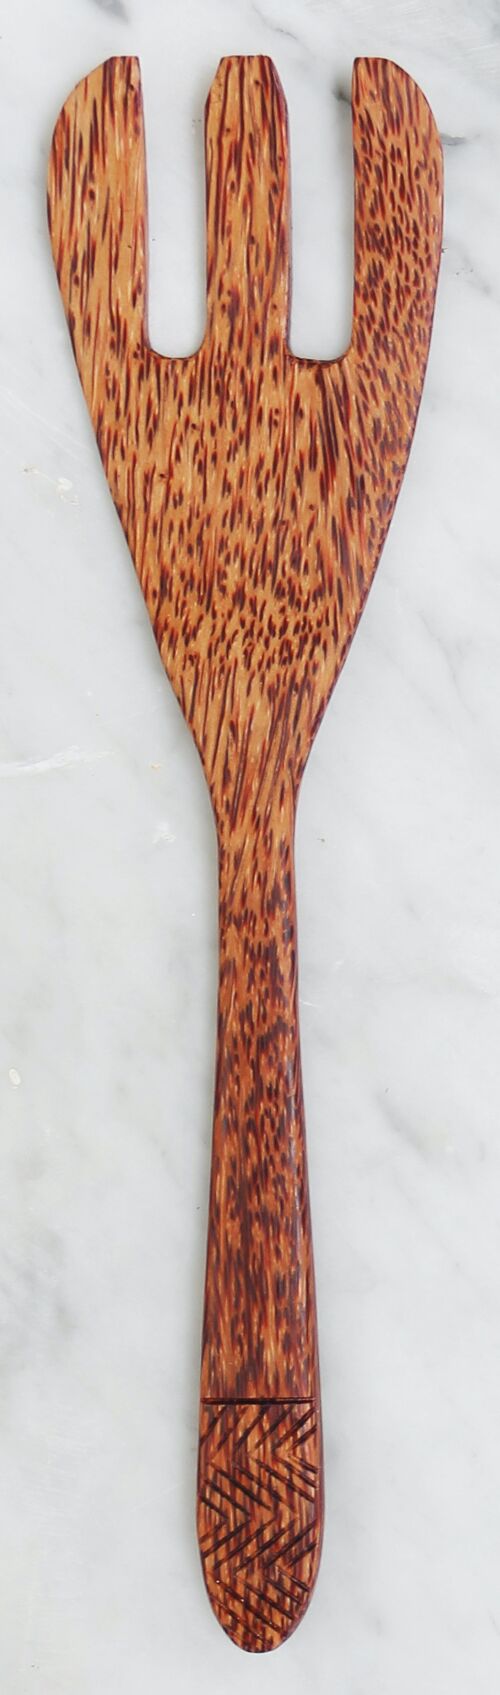 Coconut spatula (2)